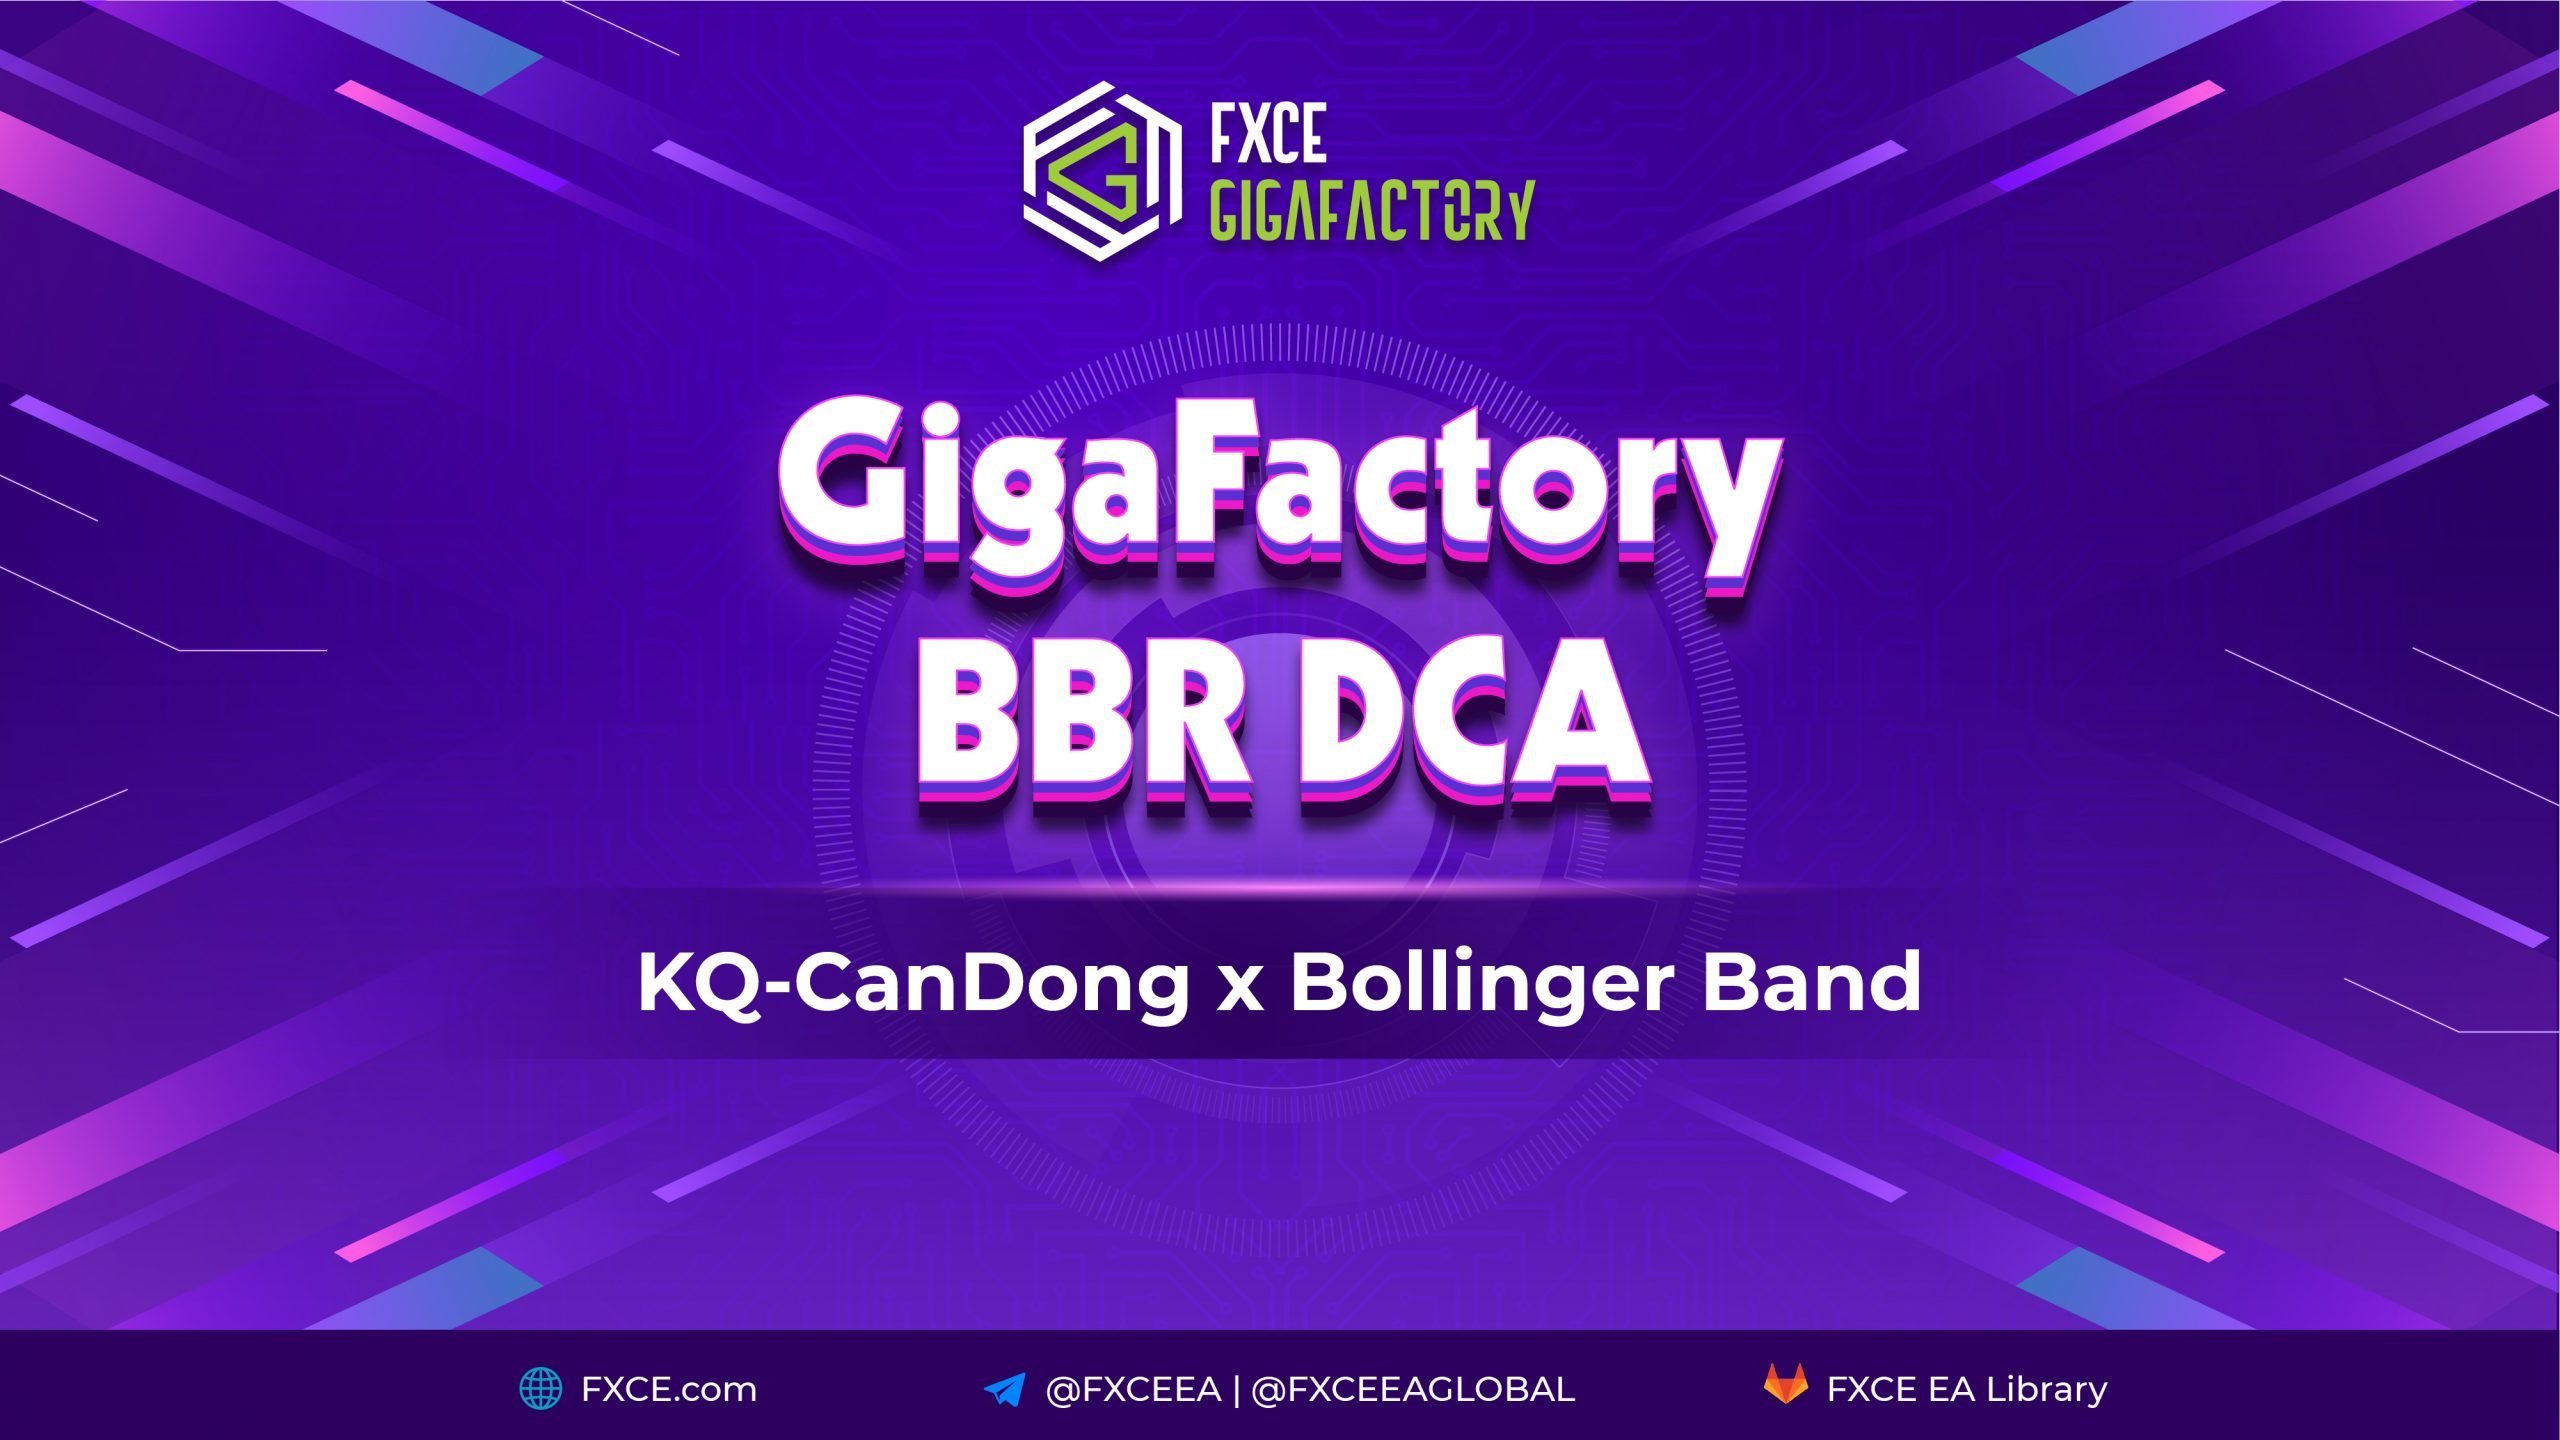 Hướng dẫn sử dụng FXCE GigaFactory BBR DCA